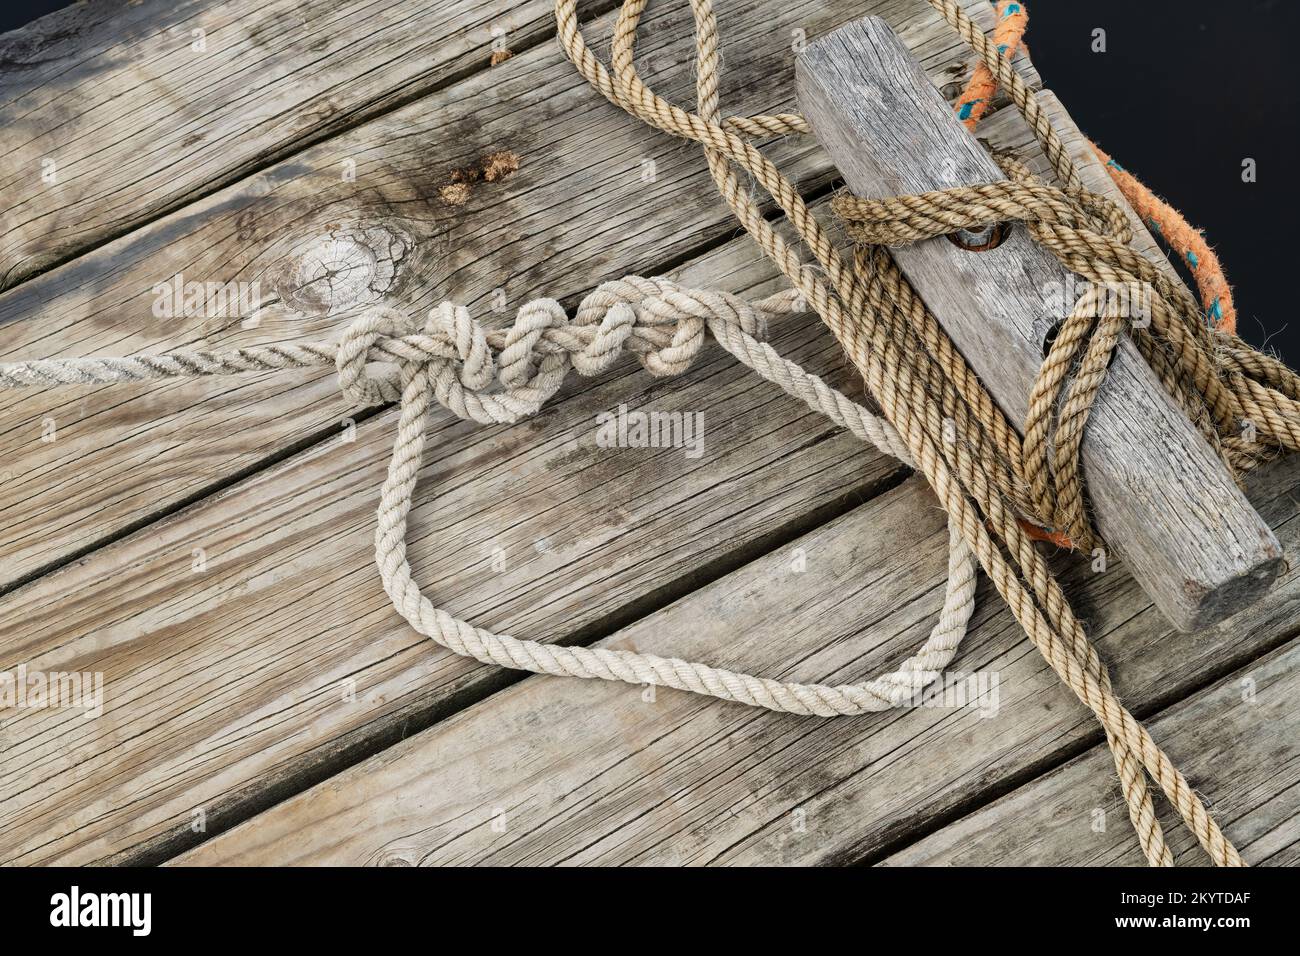 Un viejo embarcadero de madera con cuerdas de los barcos unidos al punto de amarre, Foto de stock